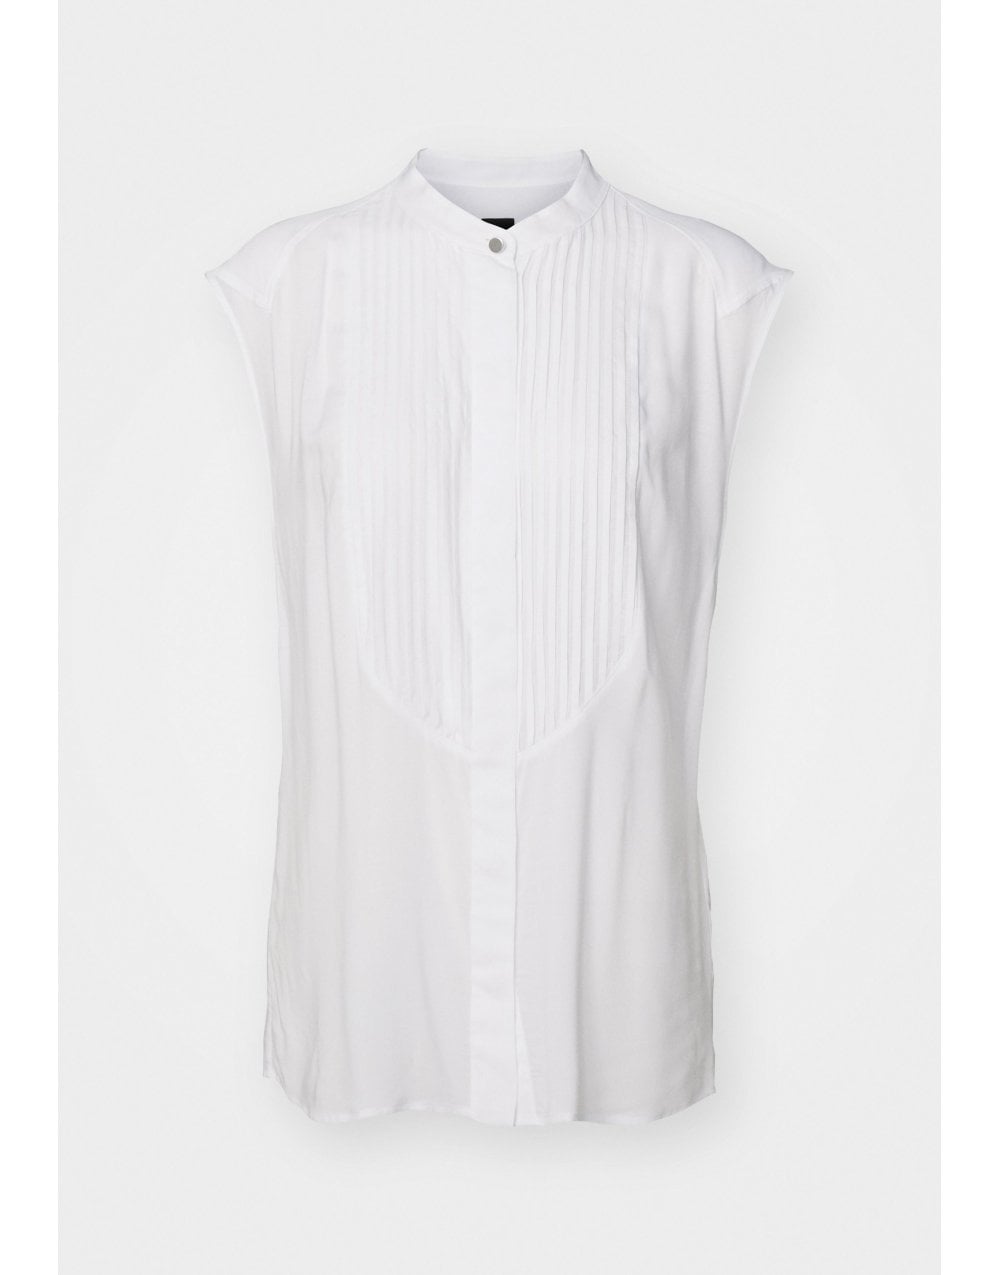 Boss Boss Betarni 1 Sleeveless Pleated Front Shirt Size: 10, Col: White